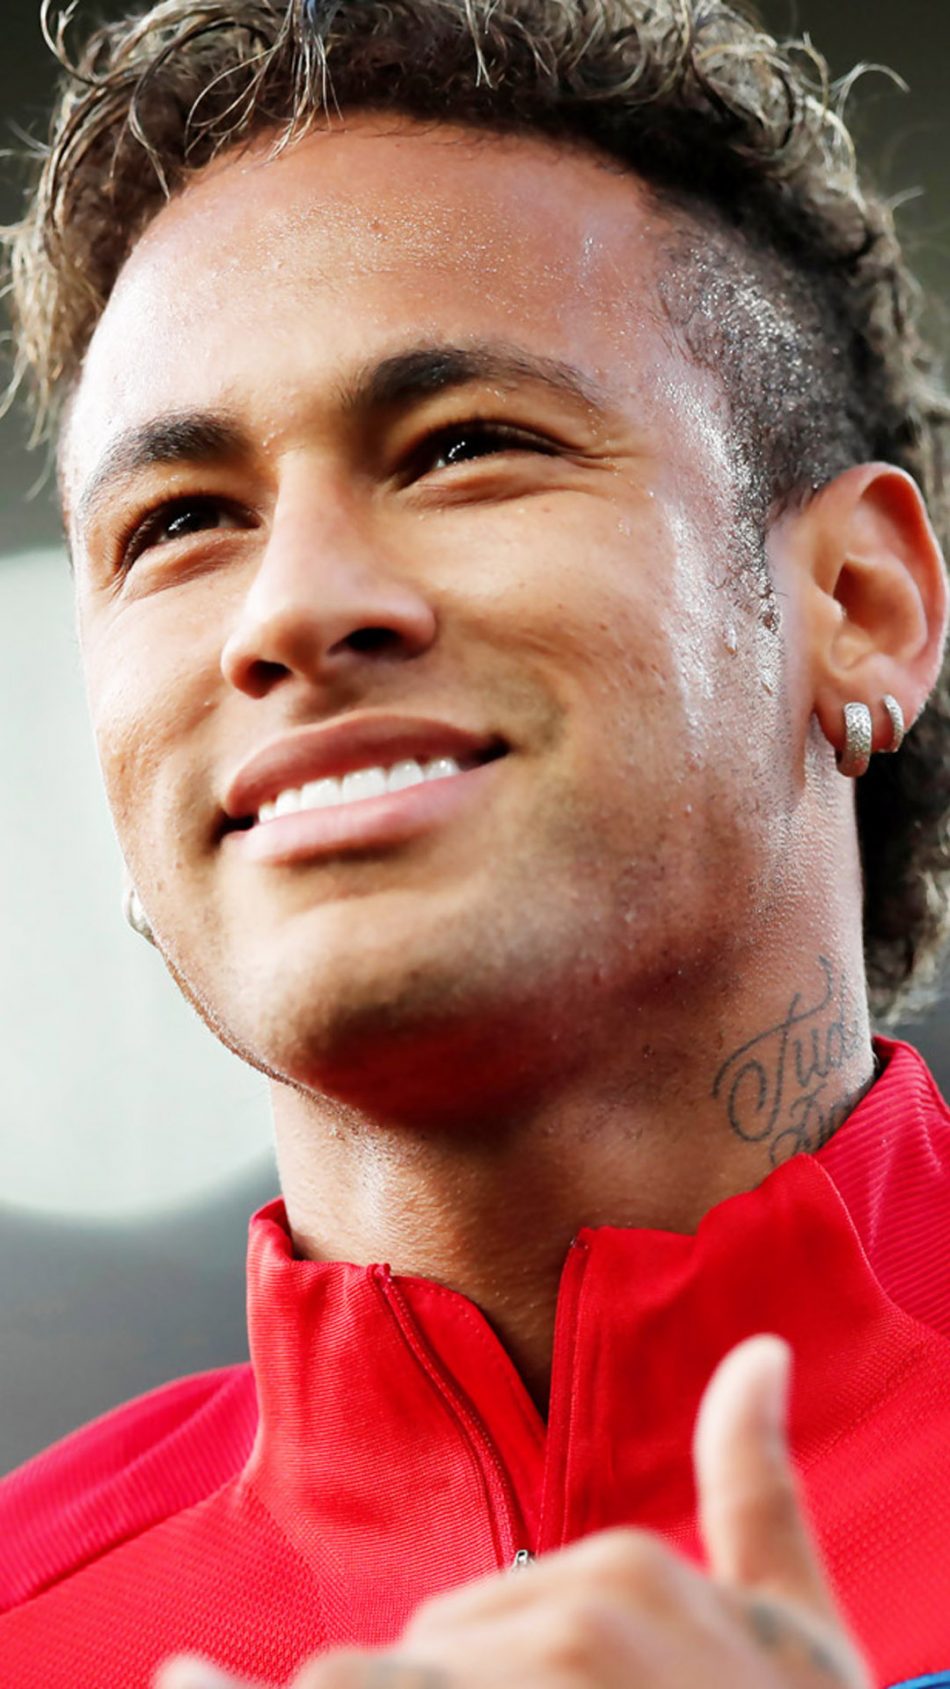 Neymar Jr Pure 4k Ultra HD Mobile Wallpaper